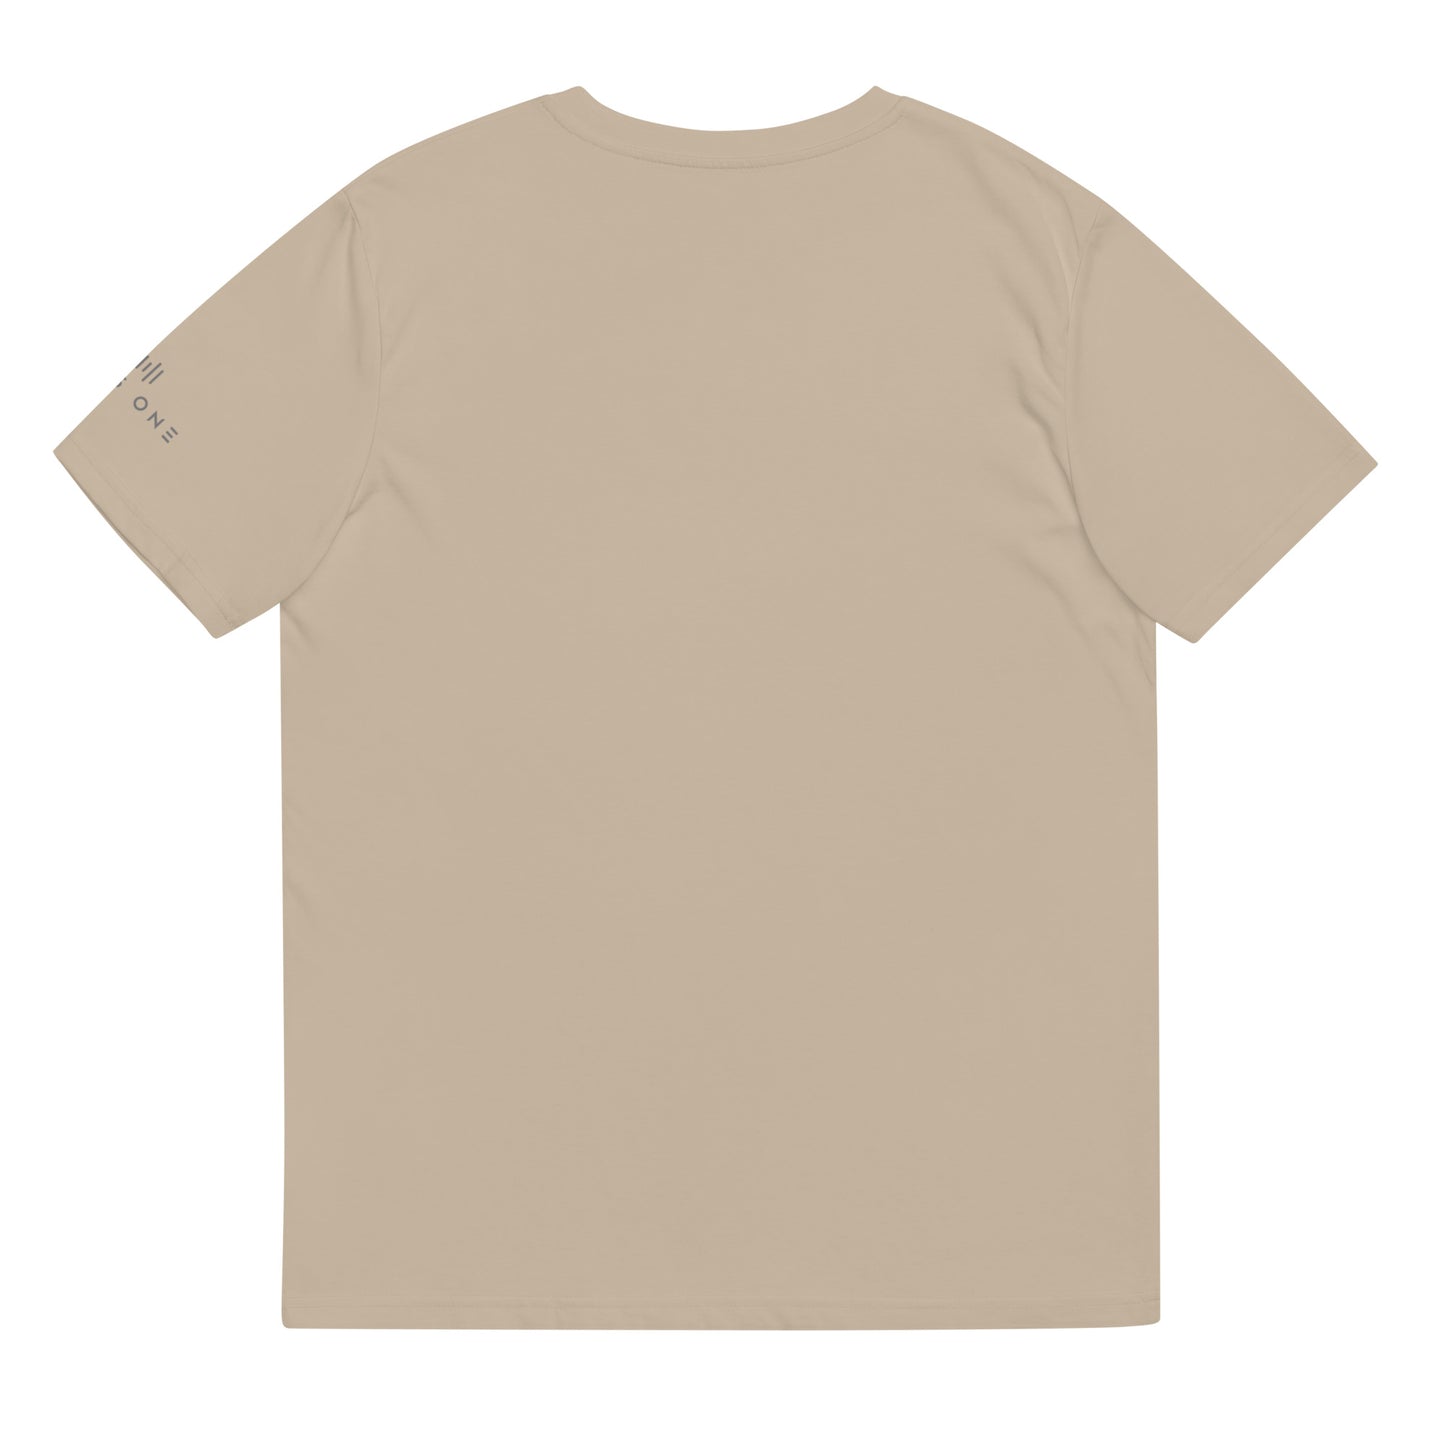 Tribe Mic-e (v5) Unisex organic cotton t-shirt